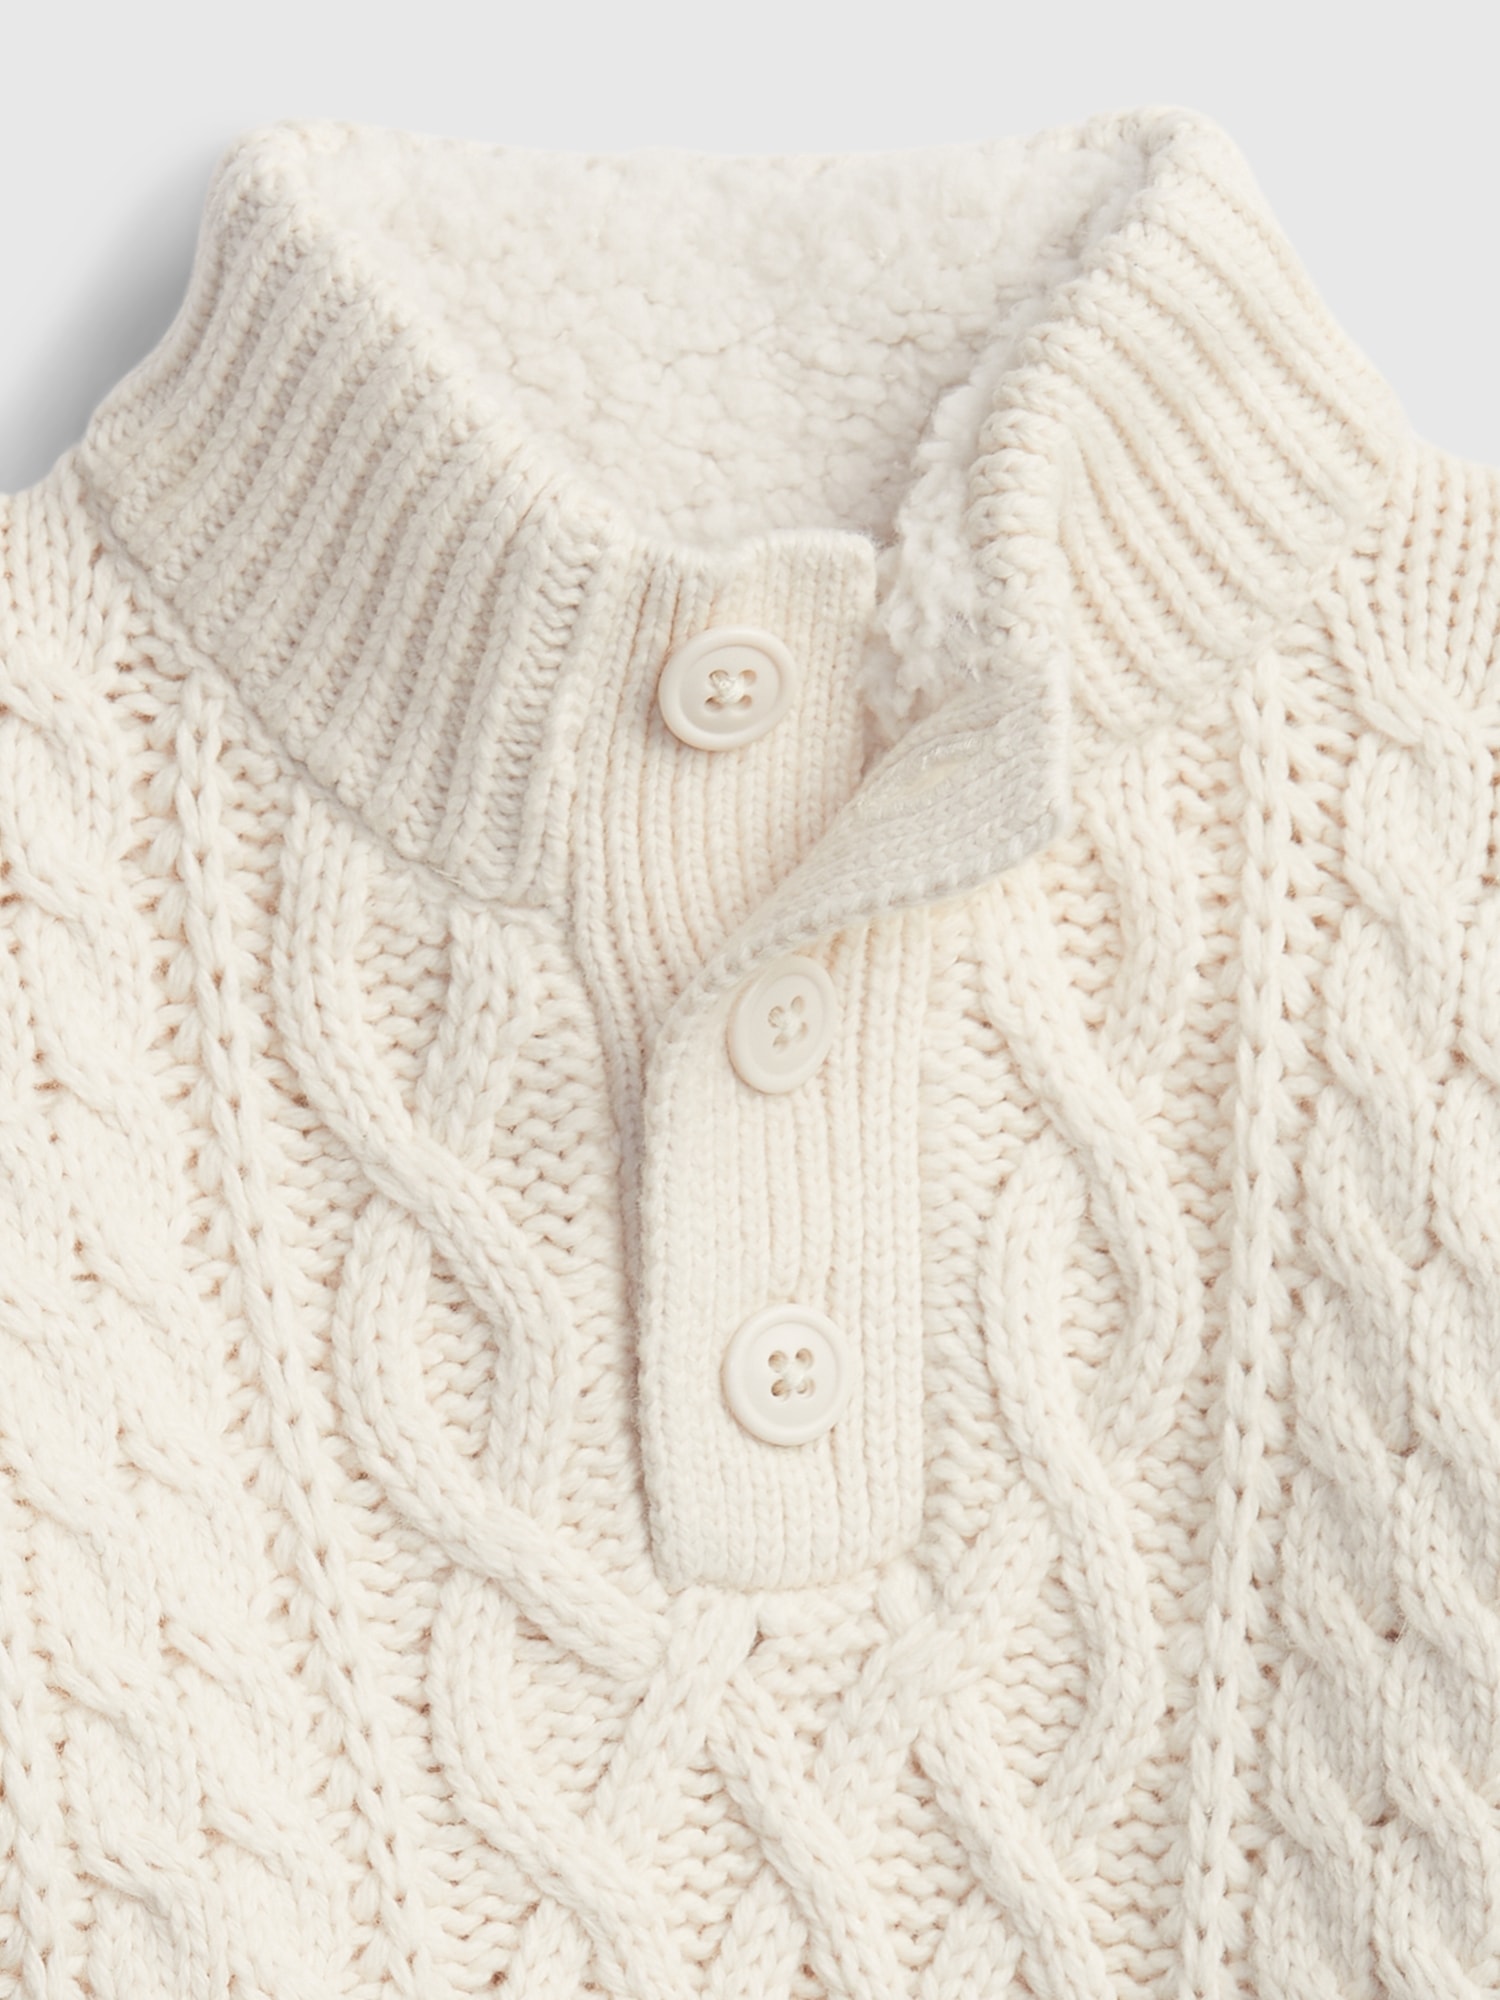 Toddler Mockneck Cable-Knit Sweater | Gap